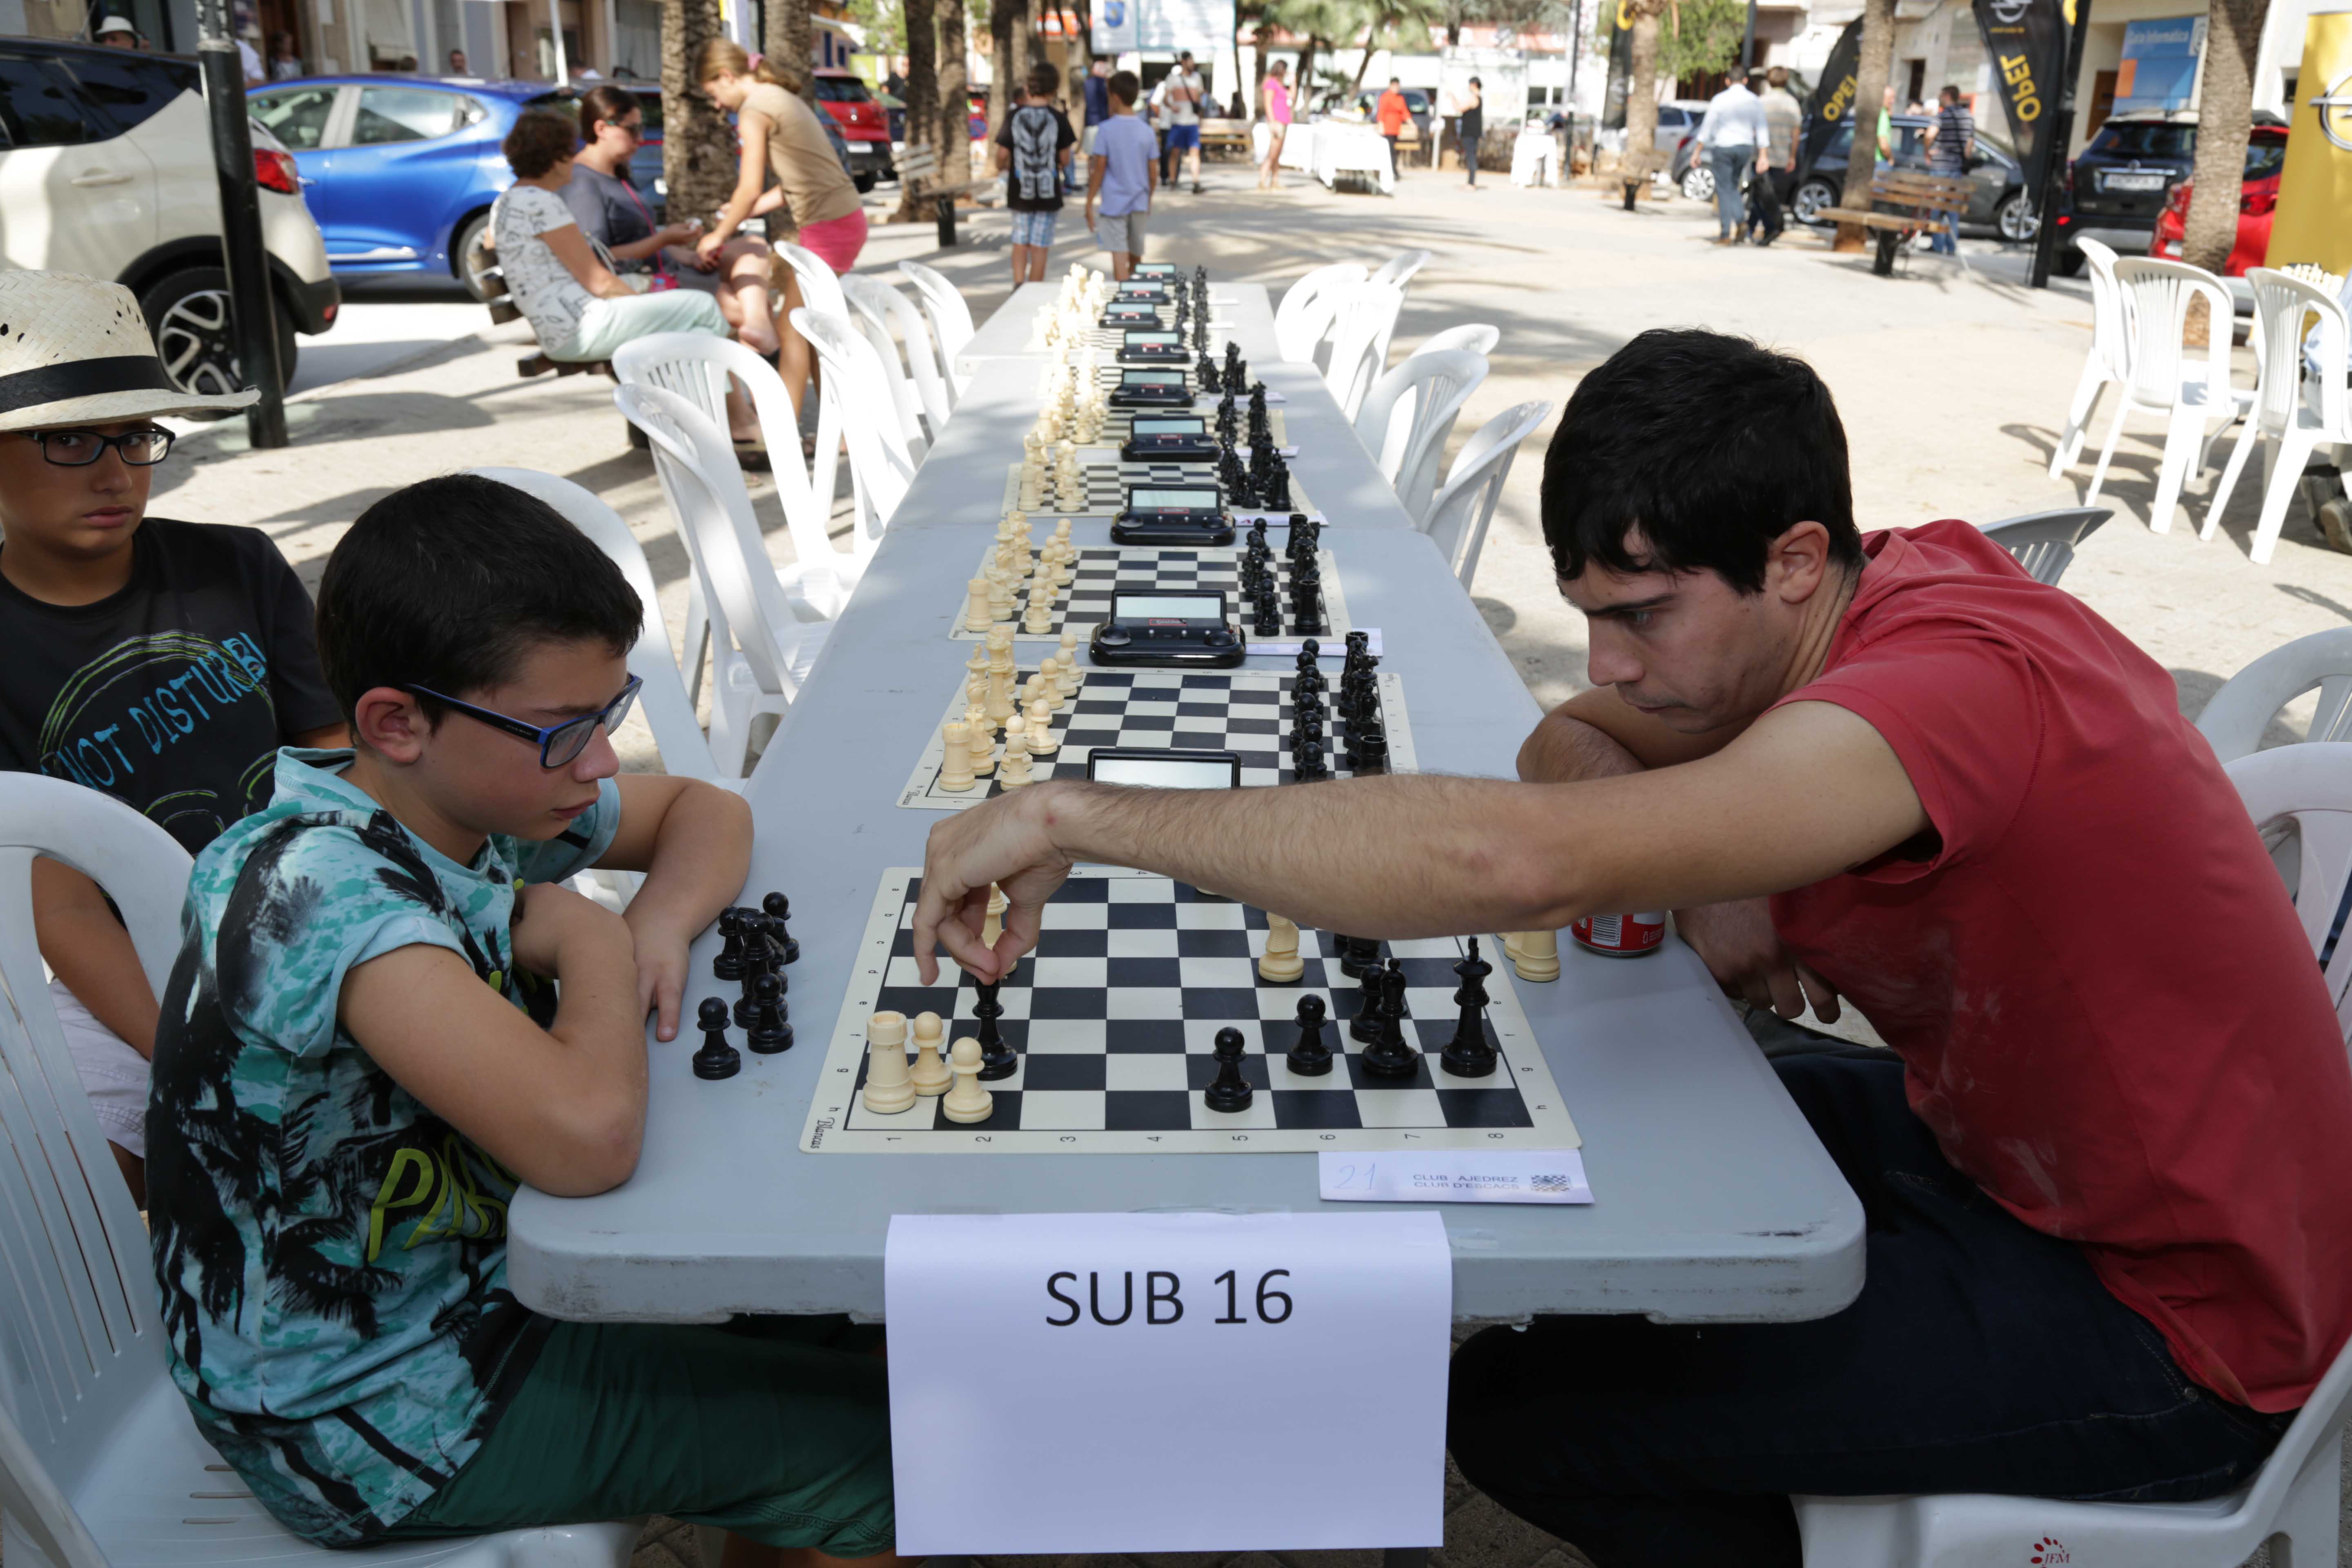 Gata celebra el 6e Campionat d’Escacs Fira Gata al Carrer